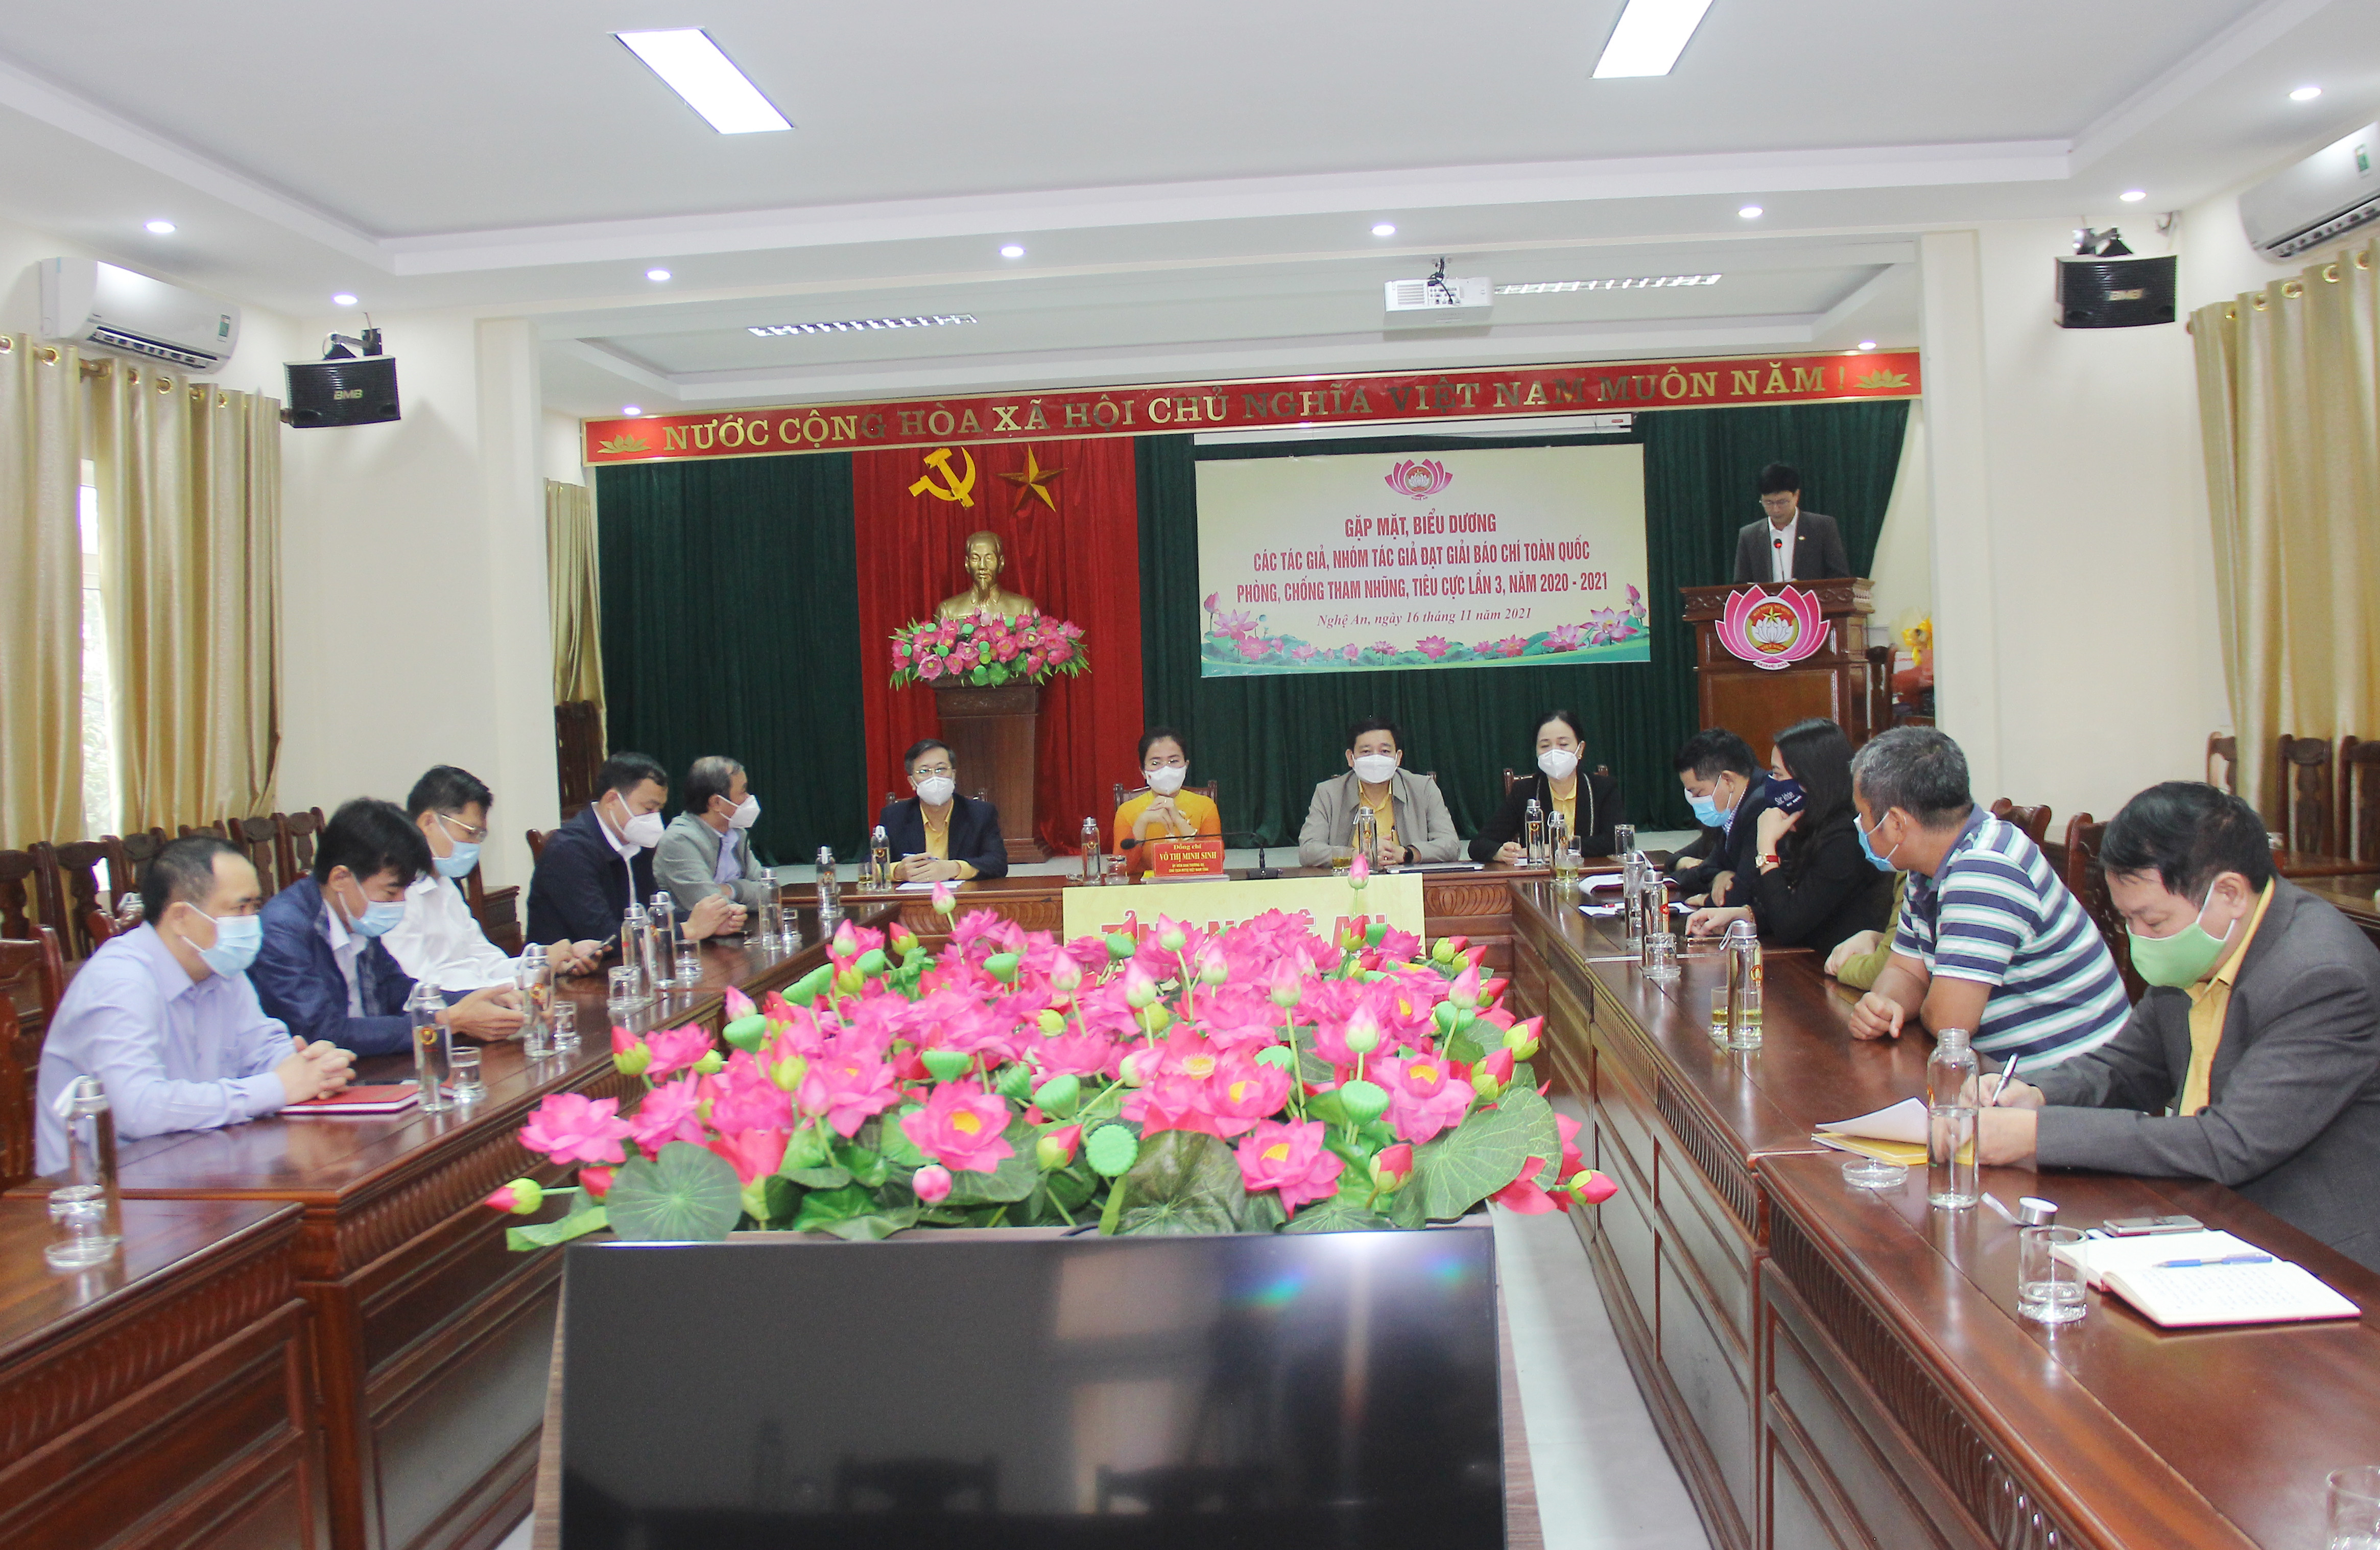 Sáng 16/11, Ban Thường trực Ủy ban MTTQ Việt Nam tỉnh Nghệ An tổ chức gặp mặt các nhóm tác giả, tác giả đạt Giải báo chí toàn quốc phòng chống tham nhũng tiêu cực lần thứ 3 năm 2020 - 2021.